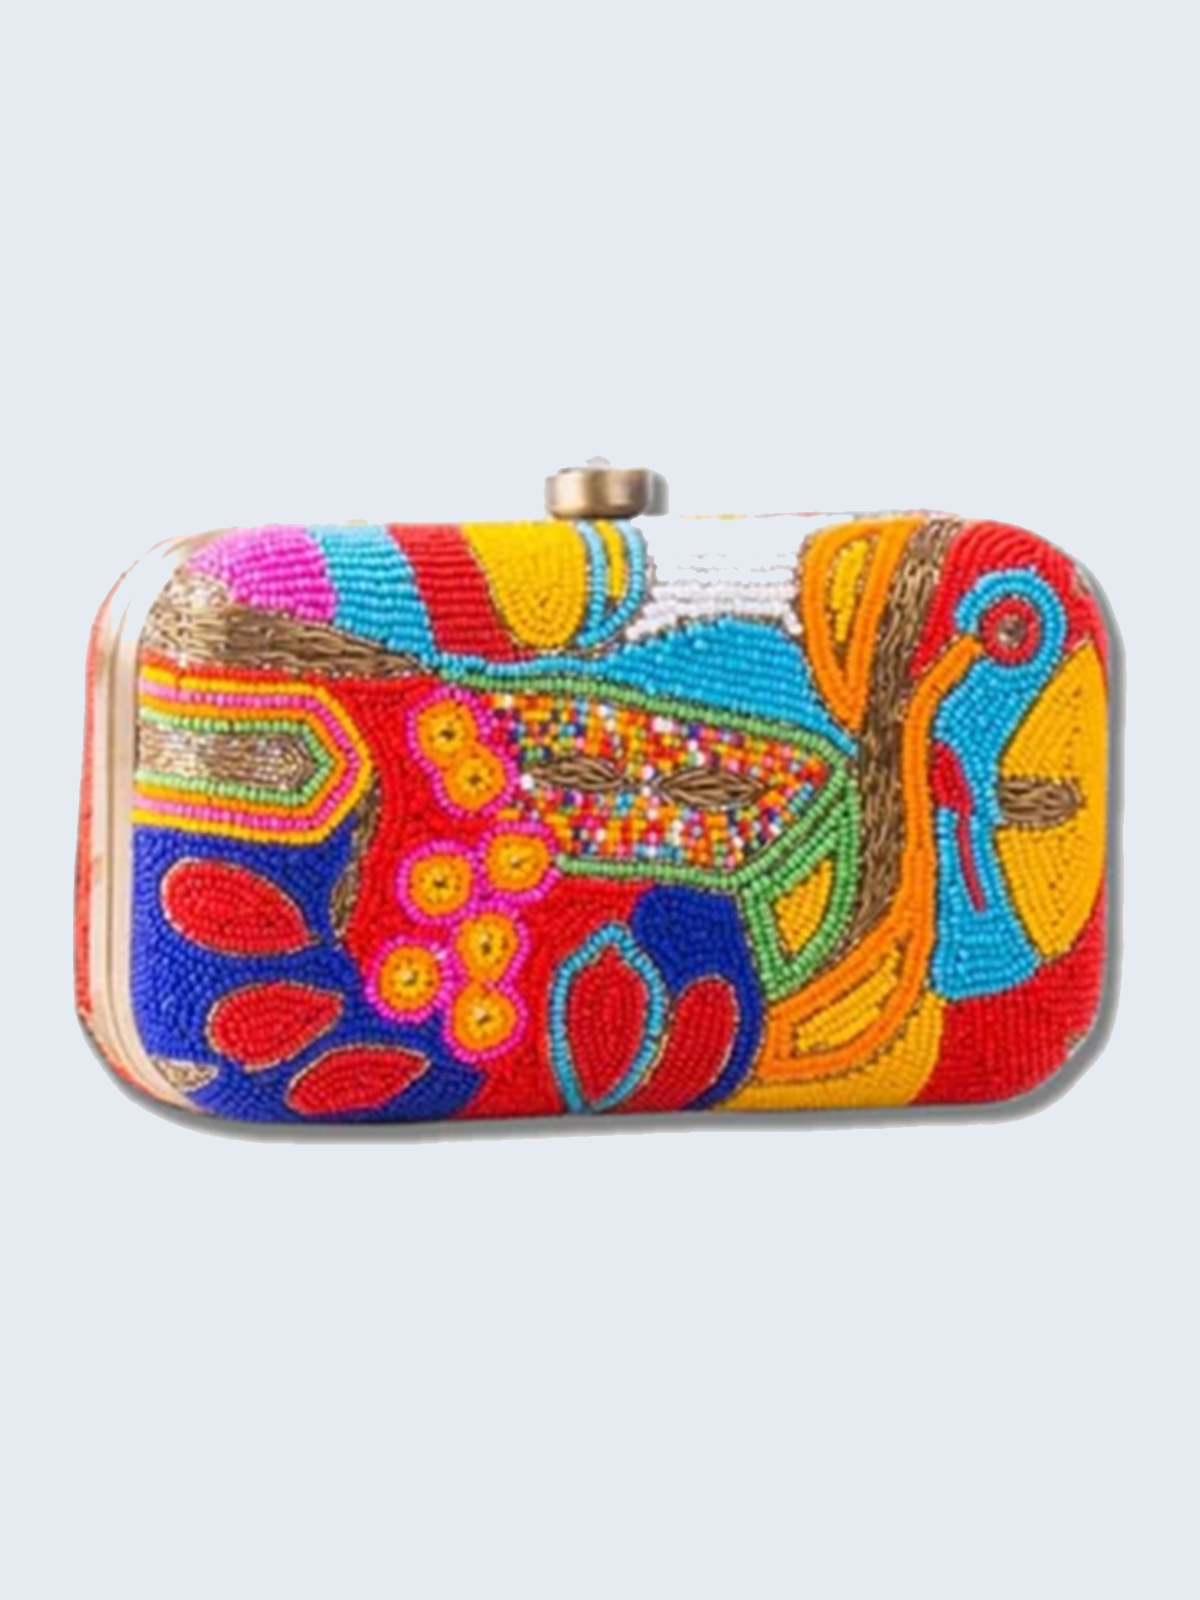 Rishab marketix Female Multi Colored Clutch Bags